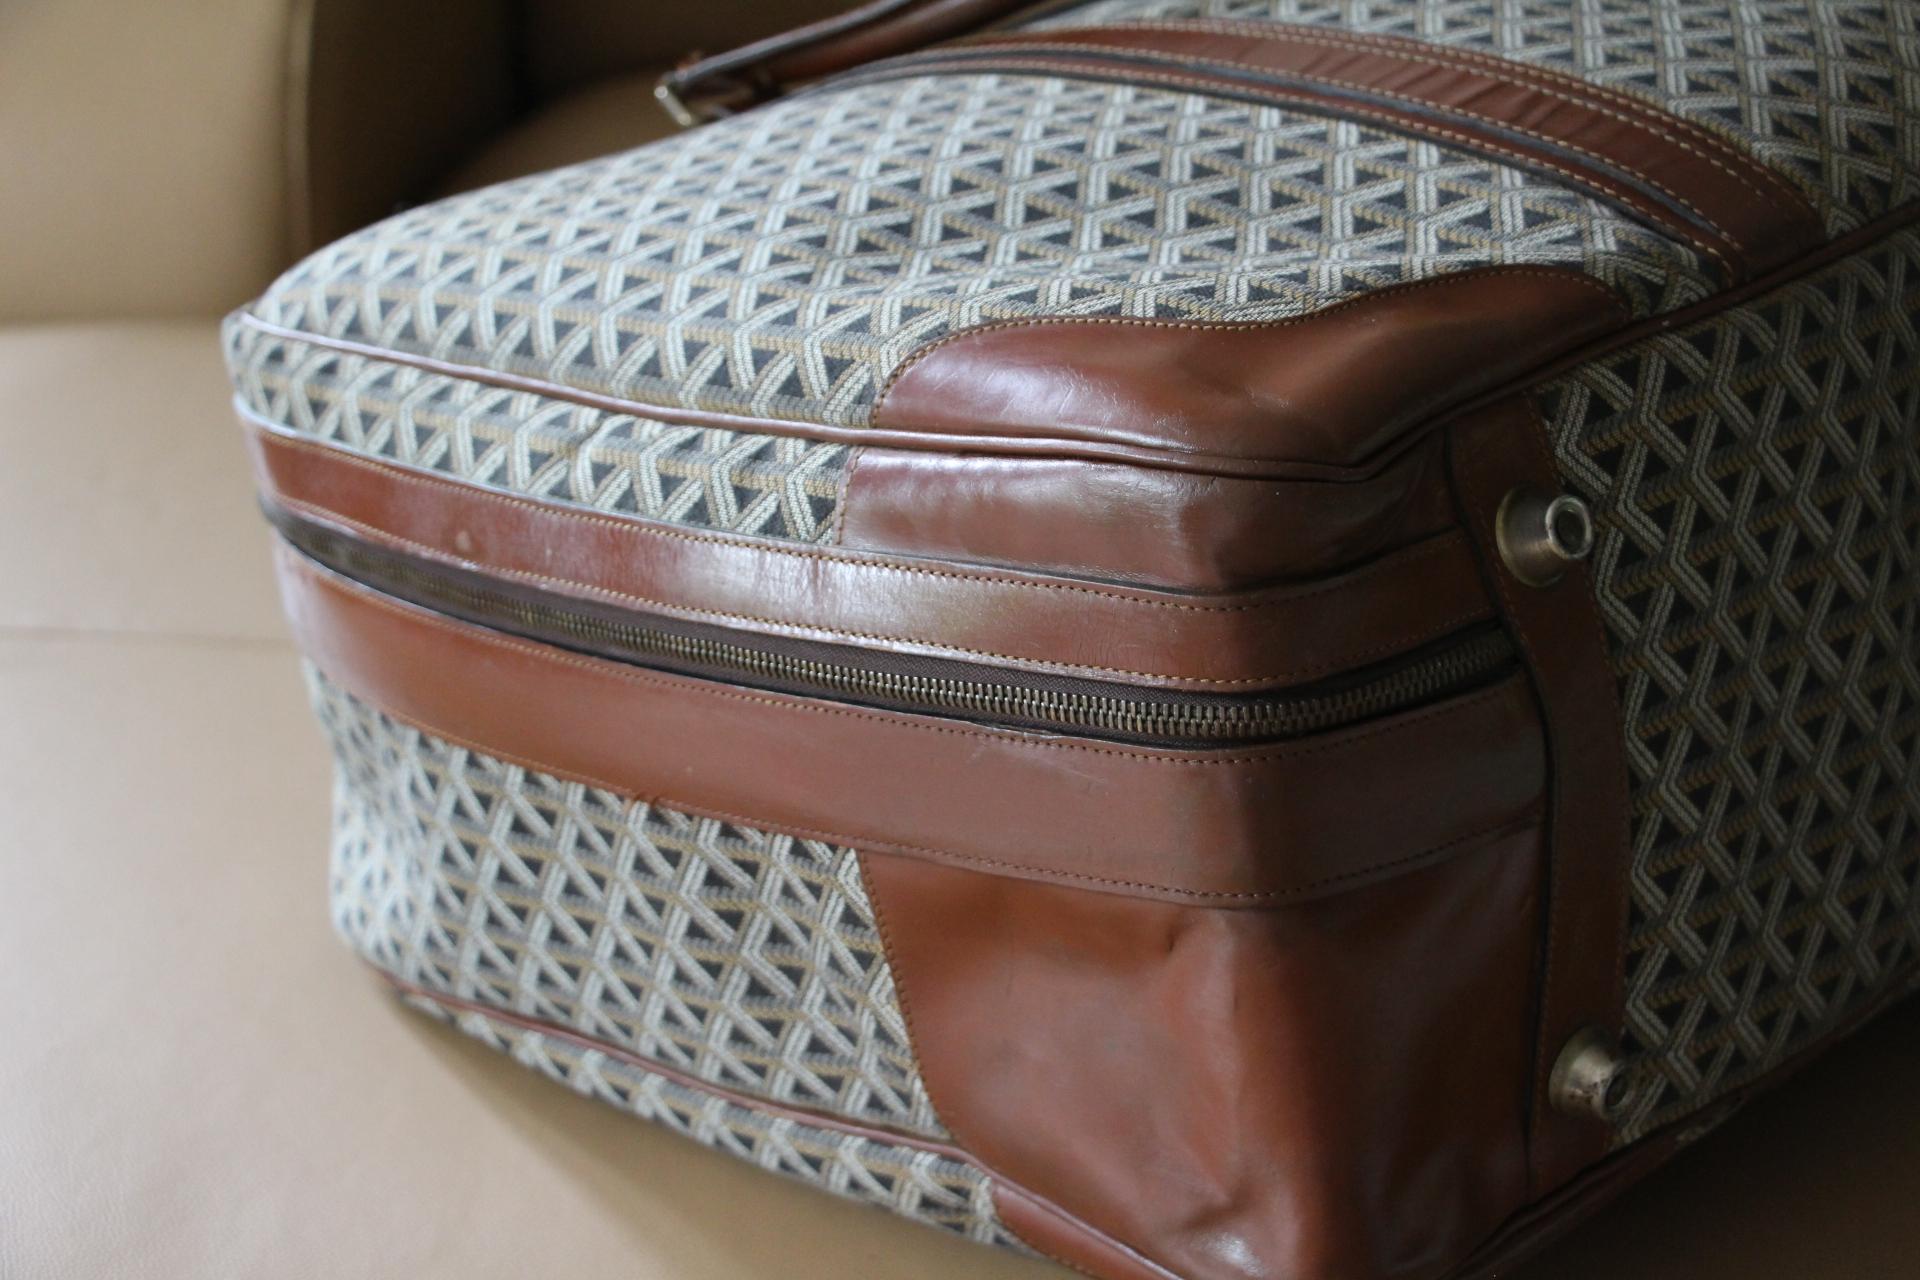 Goyard Suitcase in Woven Canvas, Goyard Steamer Trunk, Goyard Travel Bag 6